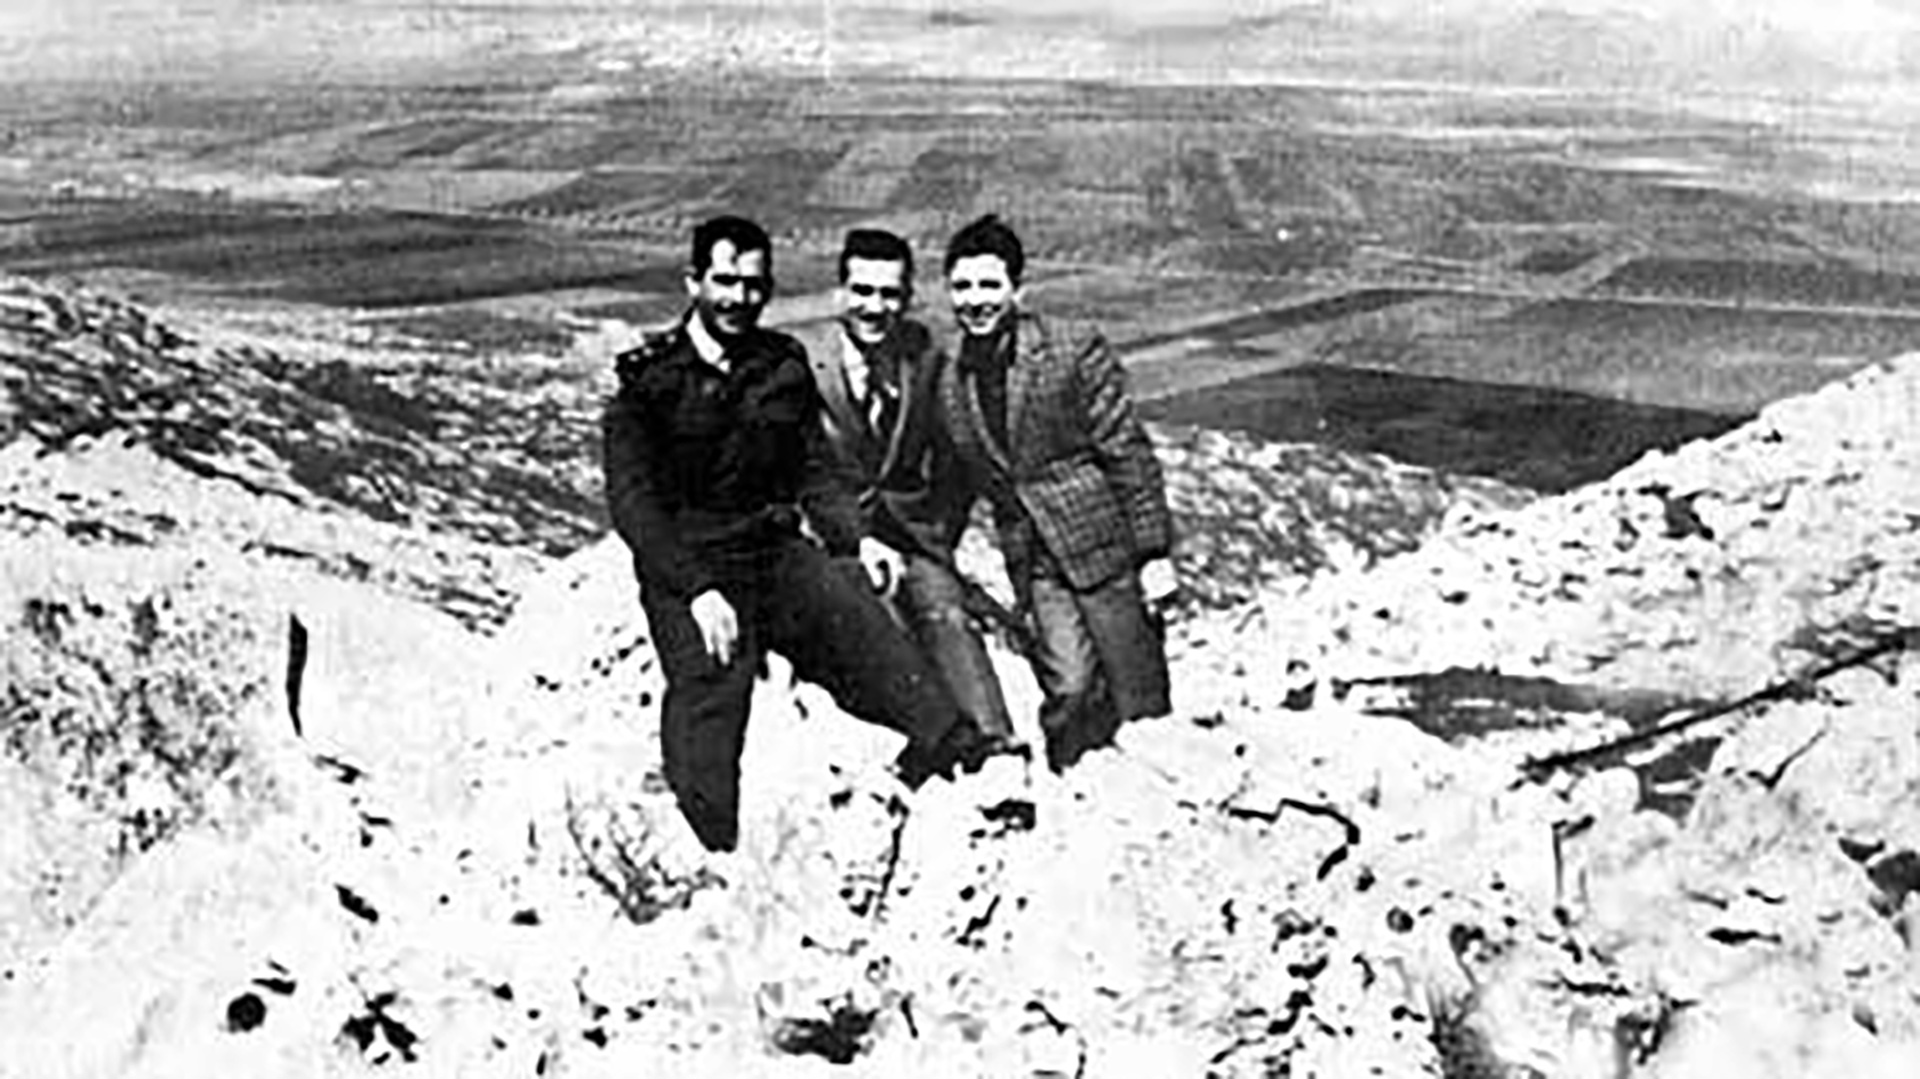 Cohen con dos amigos del ejército sirio. La imagen fue enviada a la central del Mossad. Se mostraban allí fortificaciones de Siria frente a Israel